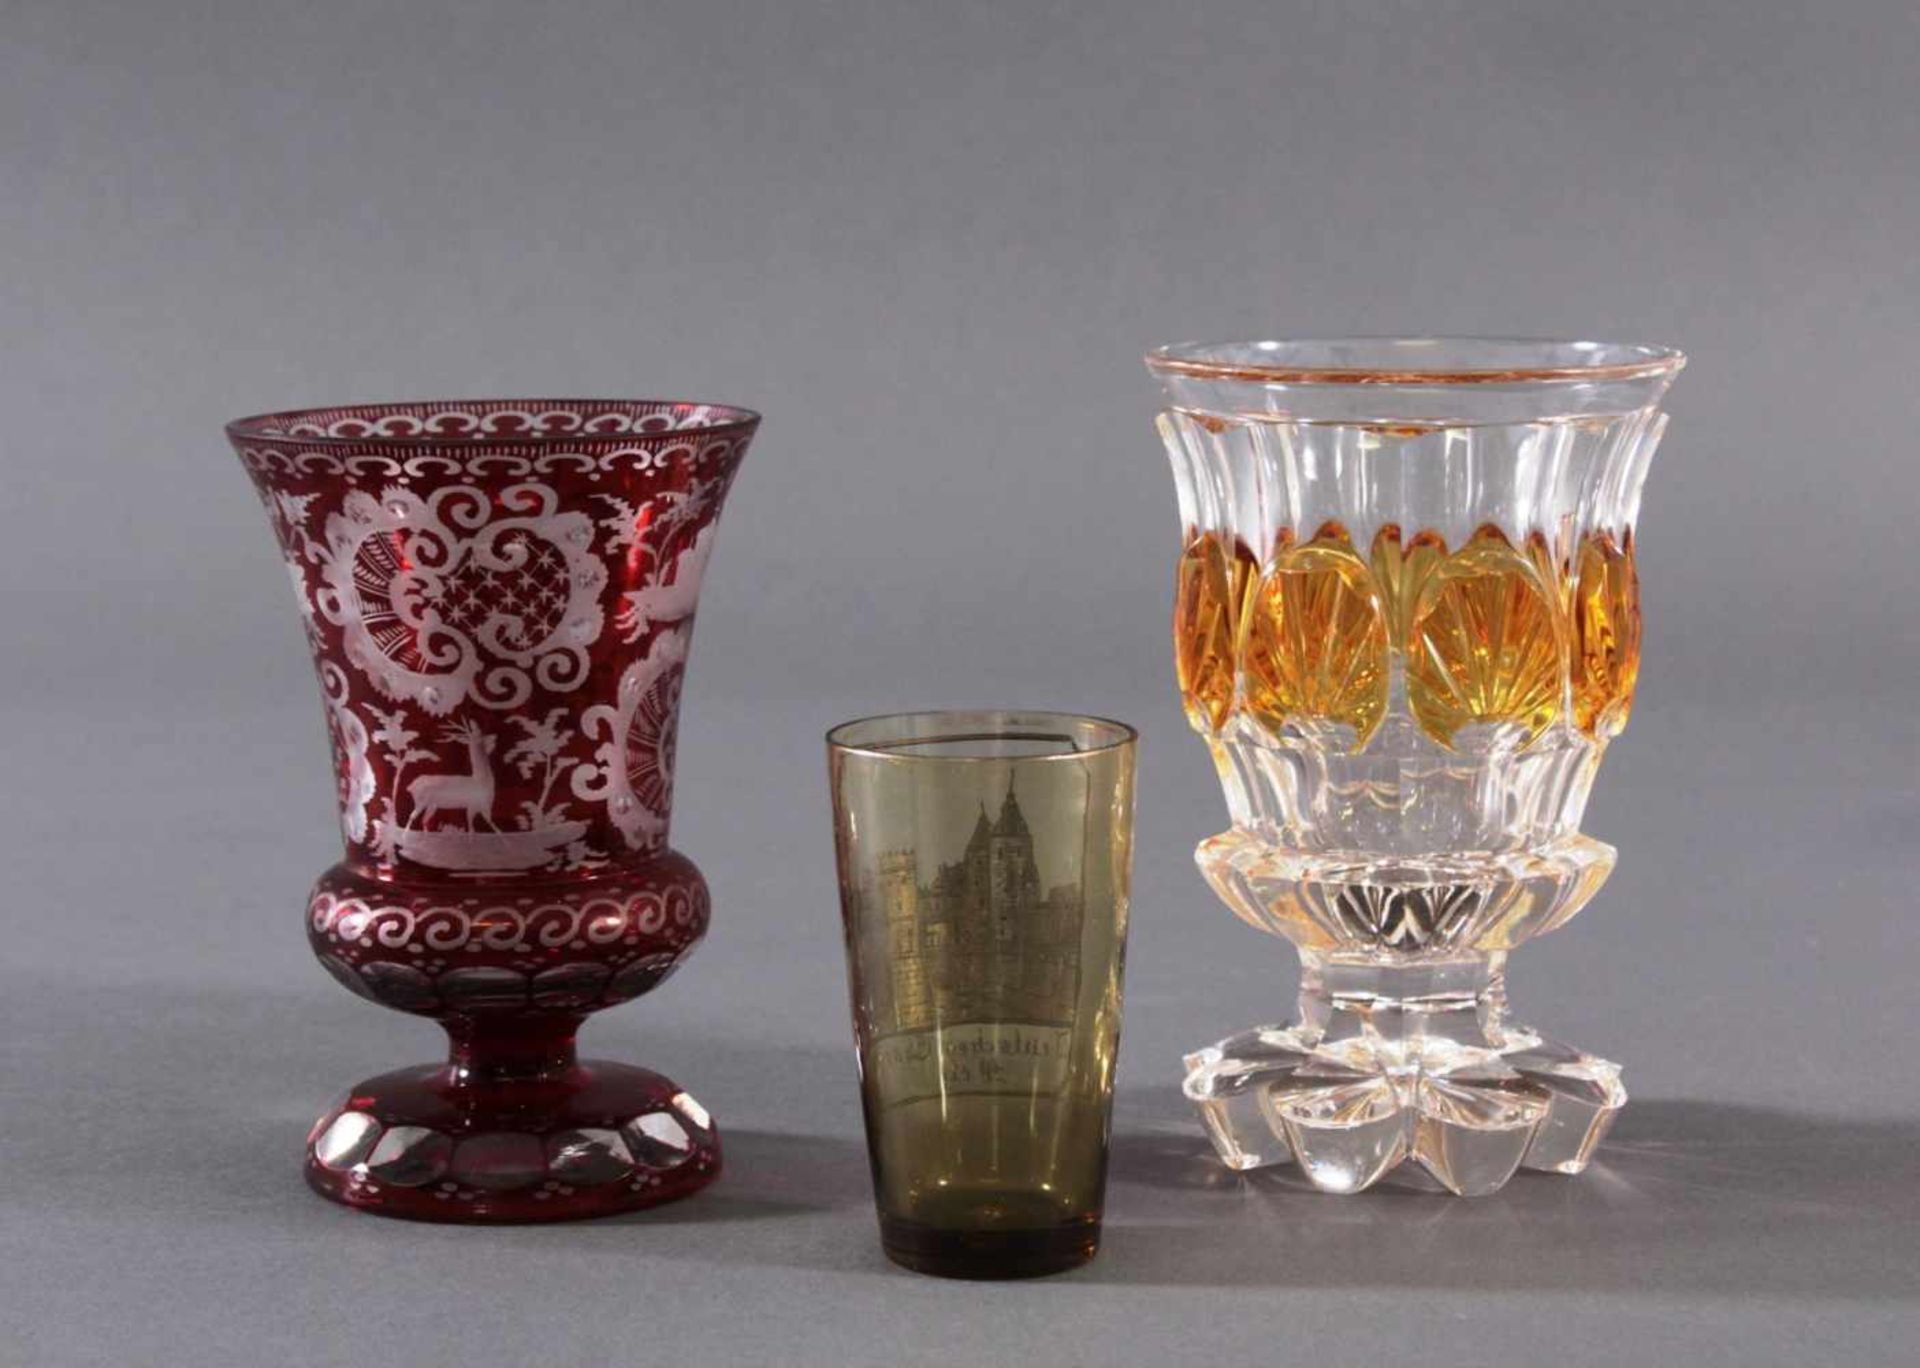 2 Pokalgläser und 1 Andenkenglas um 1900Klarglas mit partieller Farbeinschmelzung, mundgeblasen - Bild 3 aus 6